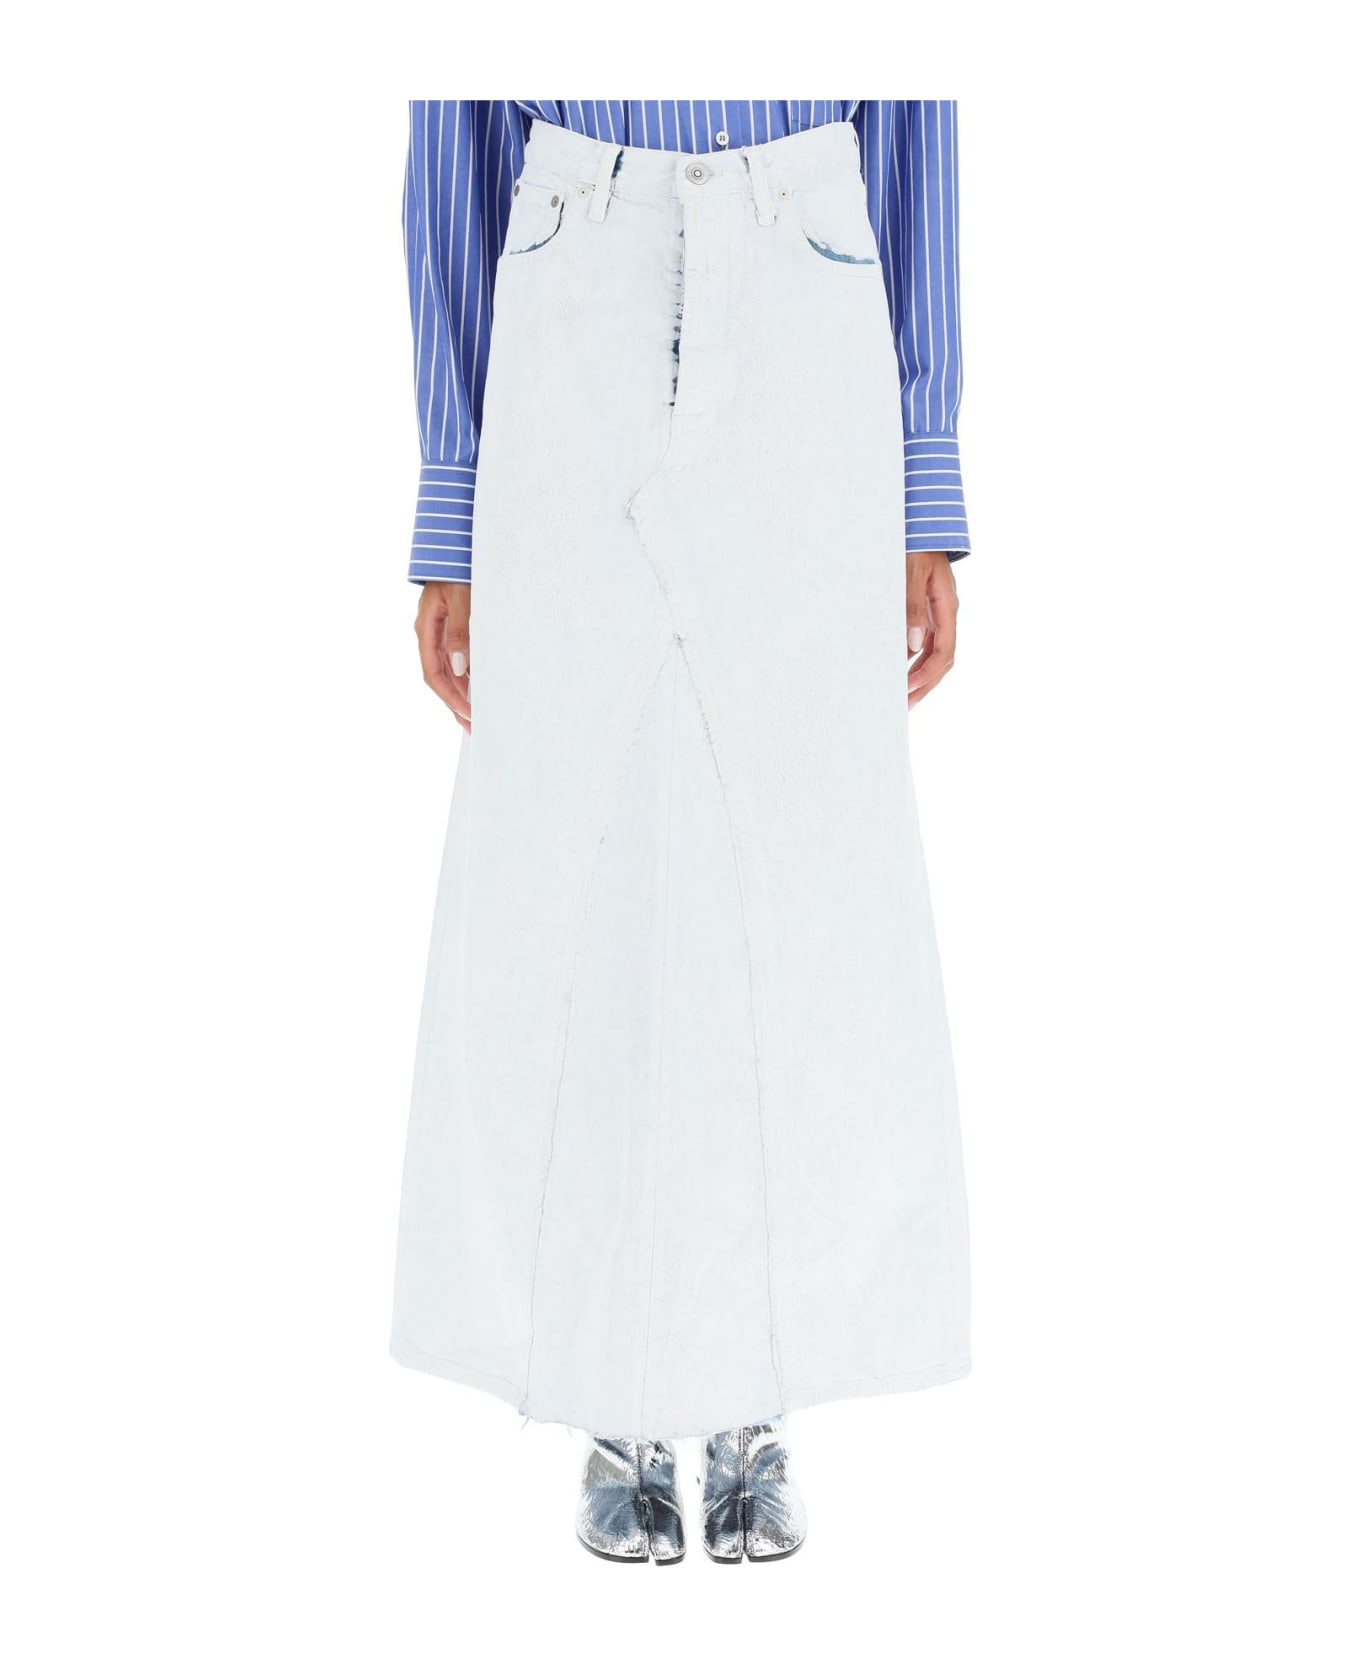 Maison Margiela Denim Skirt - WHITE PAINT (White) スカート